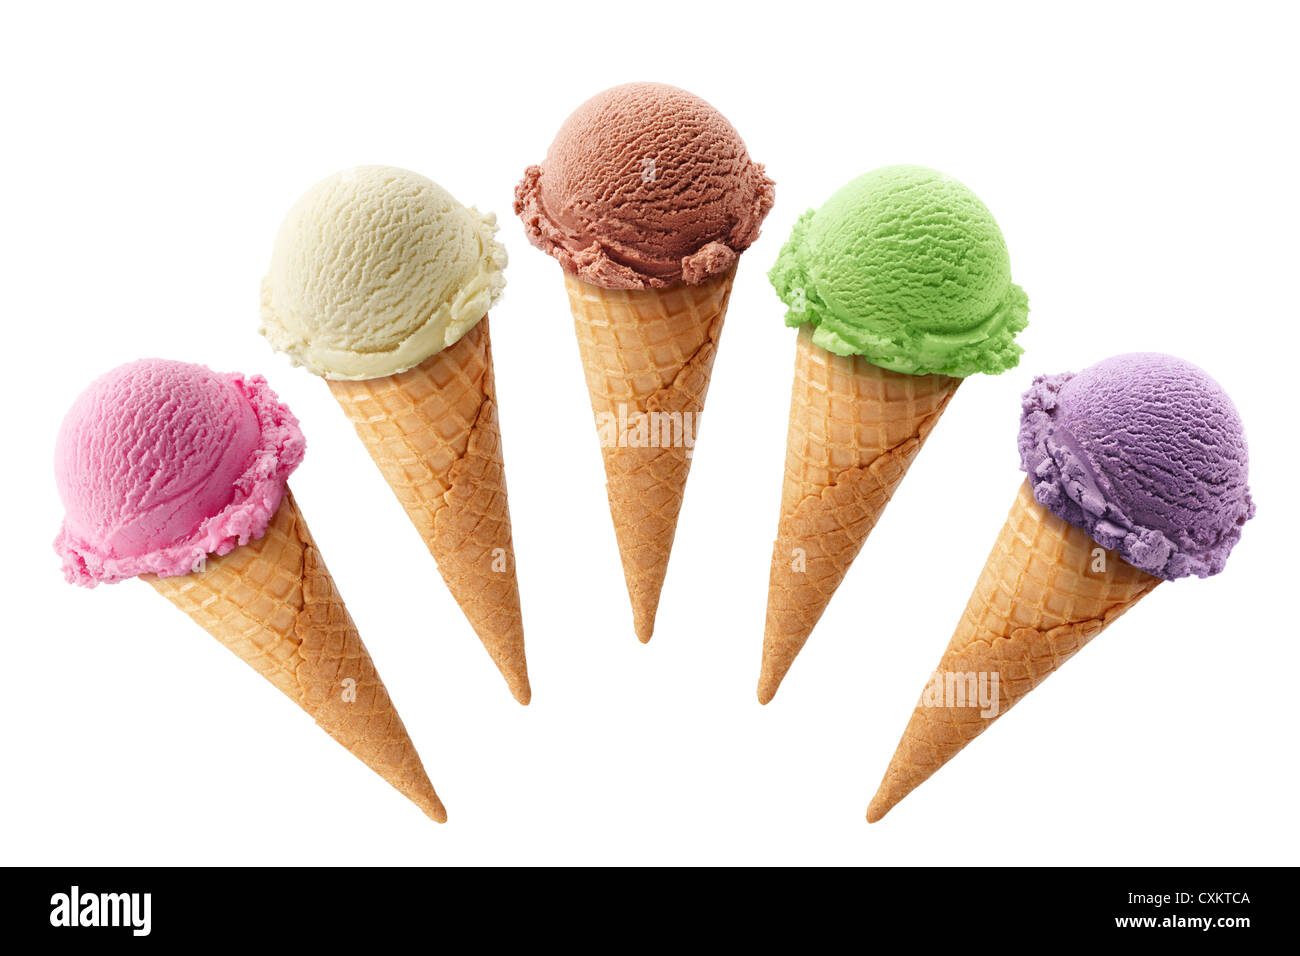 Cinq des glaces avec les cônes dans différentes saveurs Banque D'Images